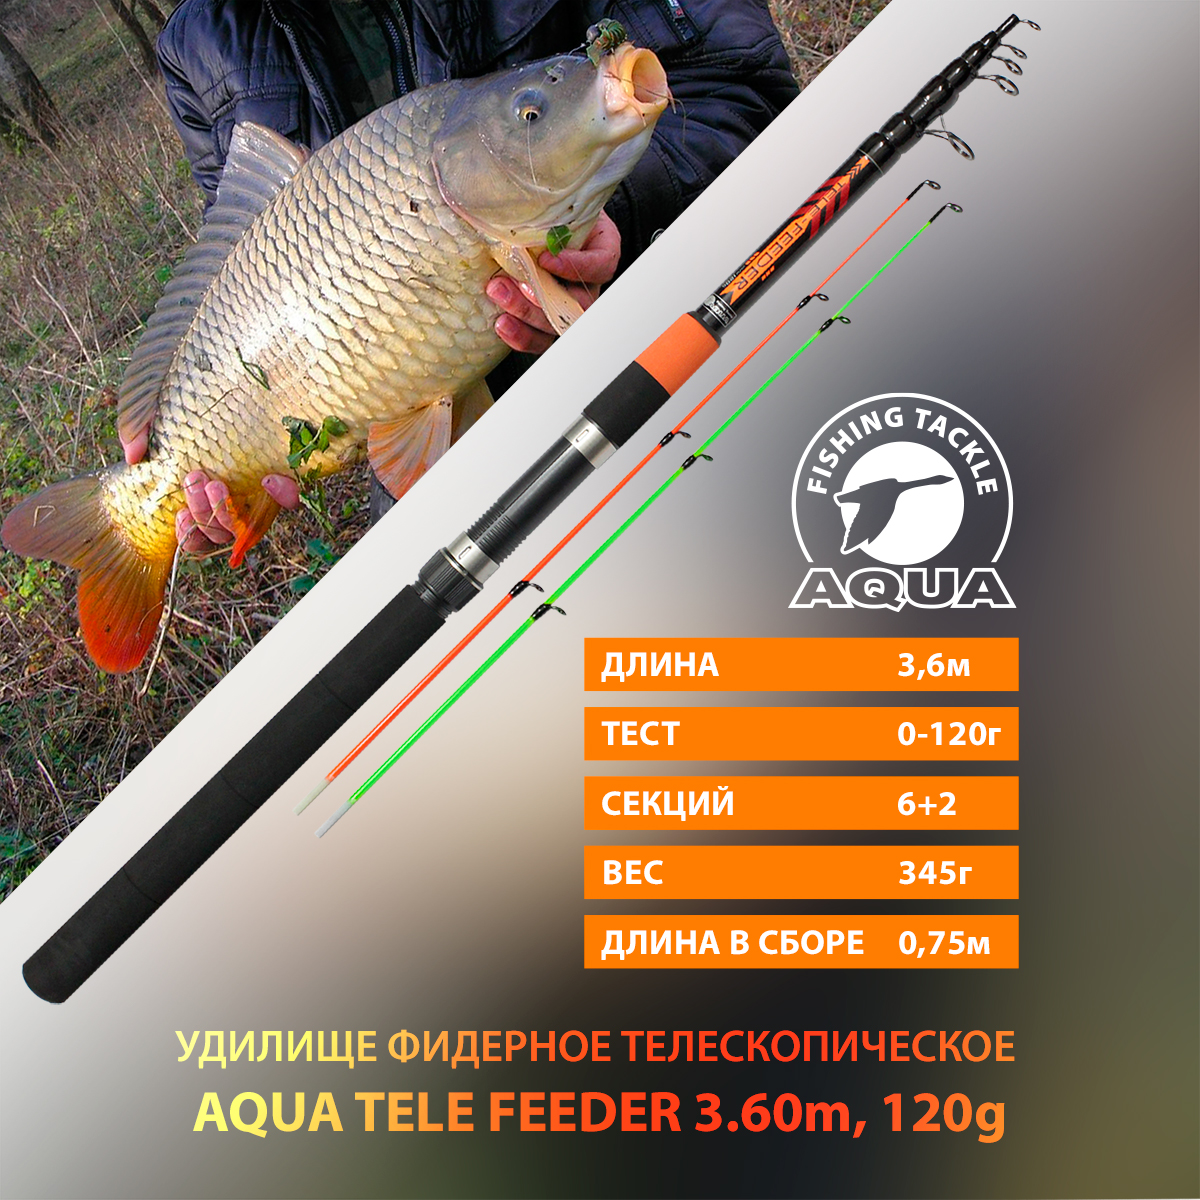 Удилище фидерное телескопическое для рыбалки AQUA TELE FEEDER